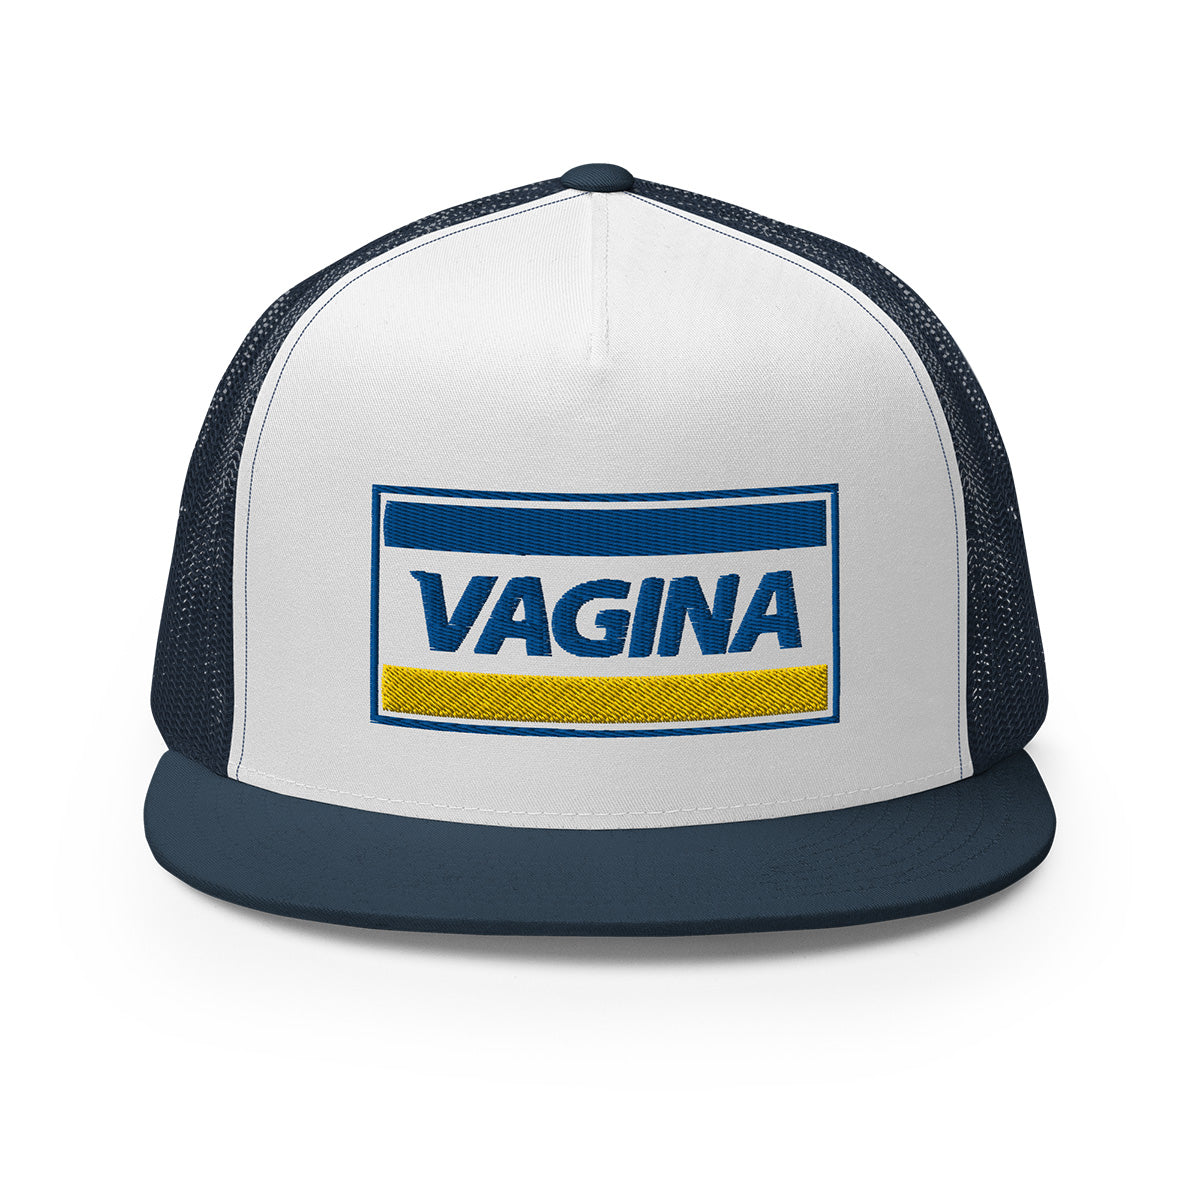 Vagina Trucker Cap